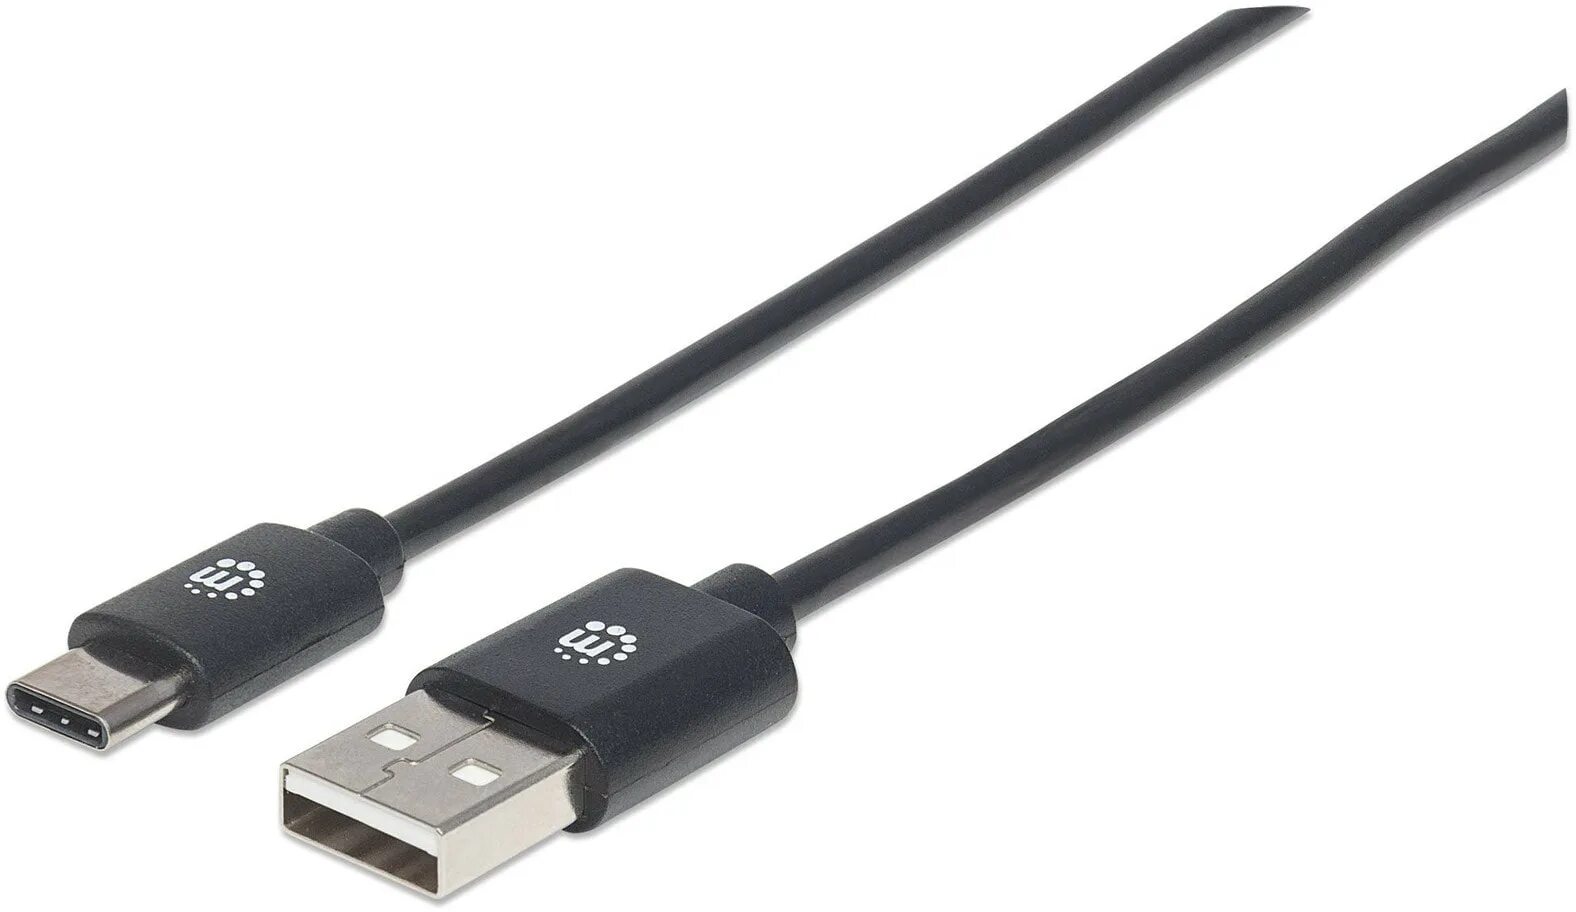 Usb 2.0 usb 3.2 gen1. USB Type-c USB 3.2 gen1. USB C 3.2 gen1. Кабель USB 3.2 gen1 Type-a - Micro USB-B. Кабель USB 3.2 Gen 2 Type-c.